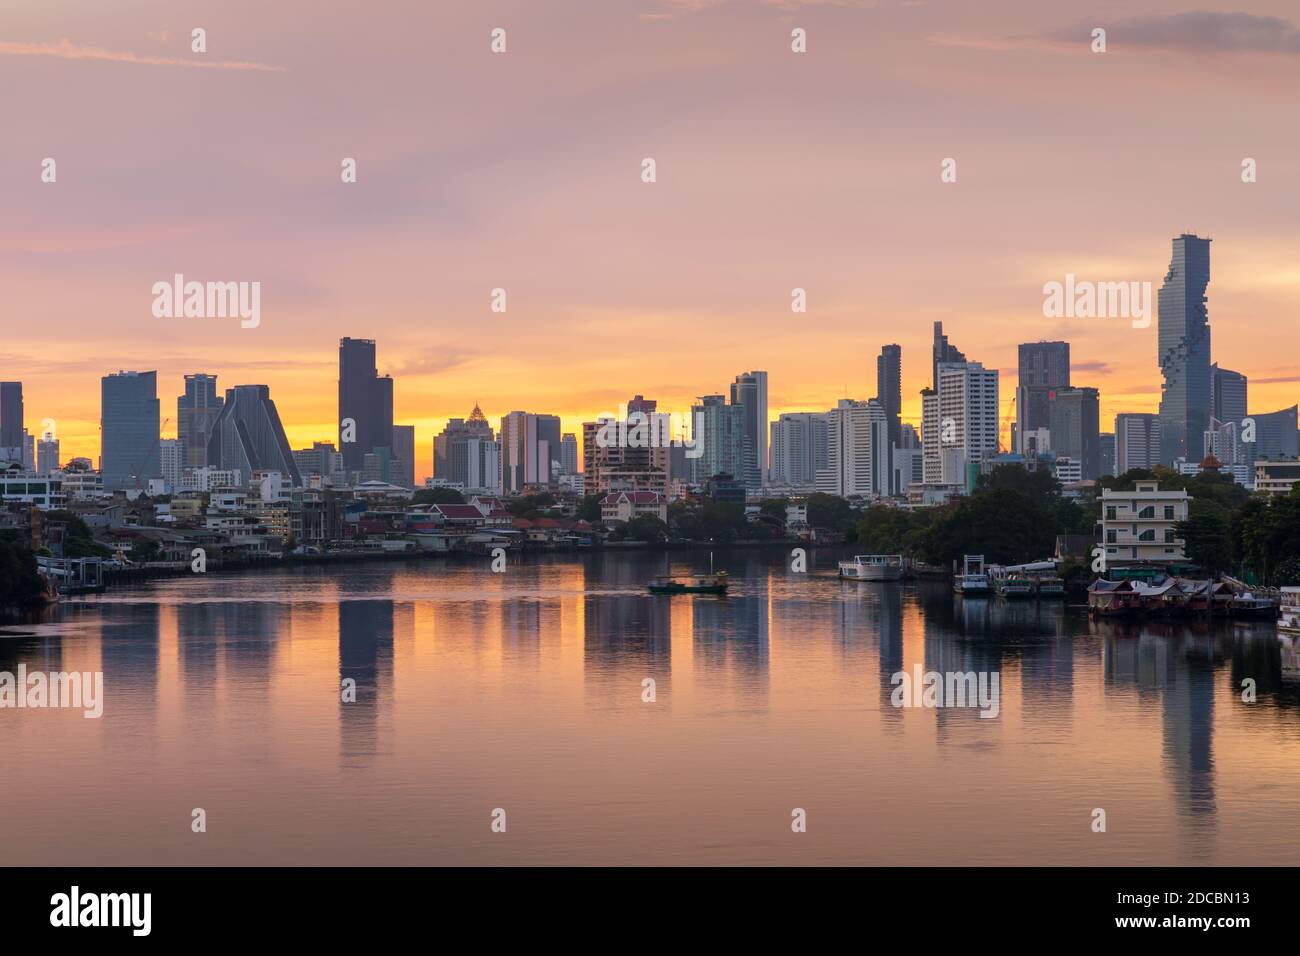 Il quartiere finanziario del centro di Bangkok, il paesaggio urbano sul lungomare e il fiume Chao Phraya al crepuscolo prima dell'alba, Thailandia Foto Stock